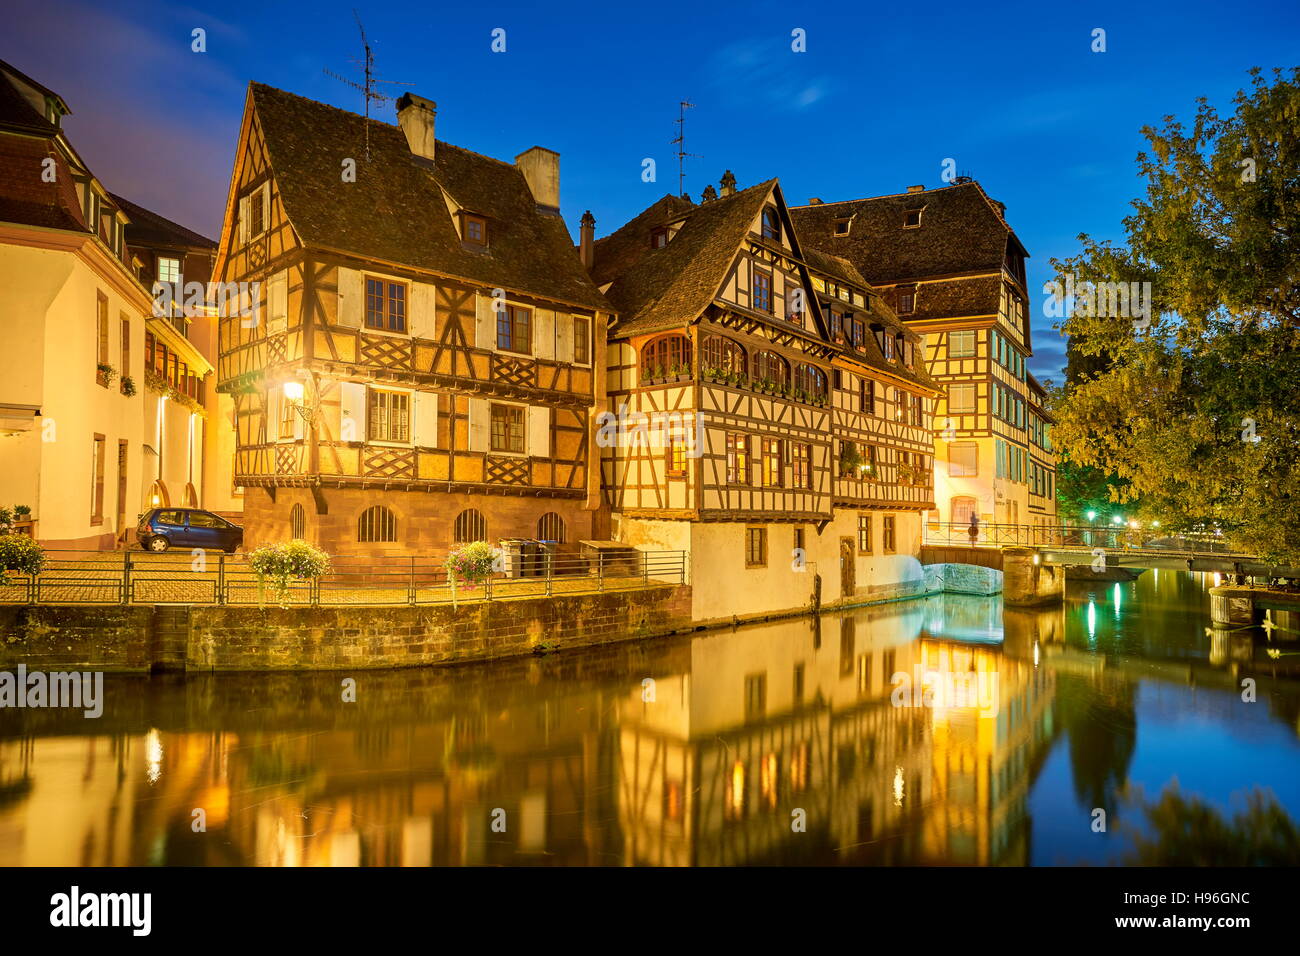 Vieille ville au soir, Strasbourg, France Banque D'Images